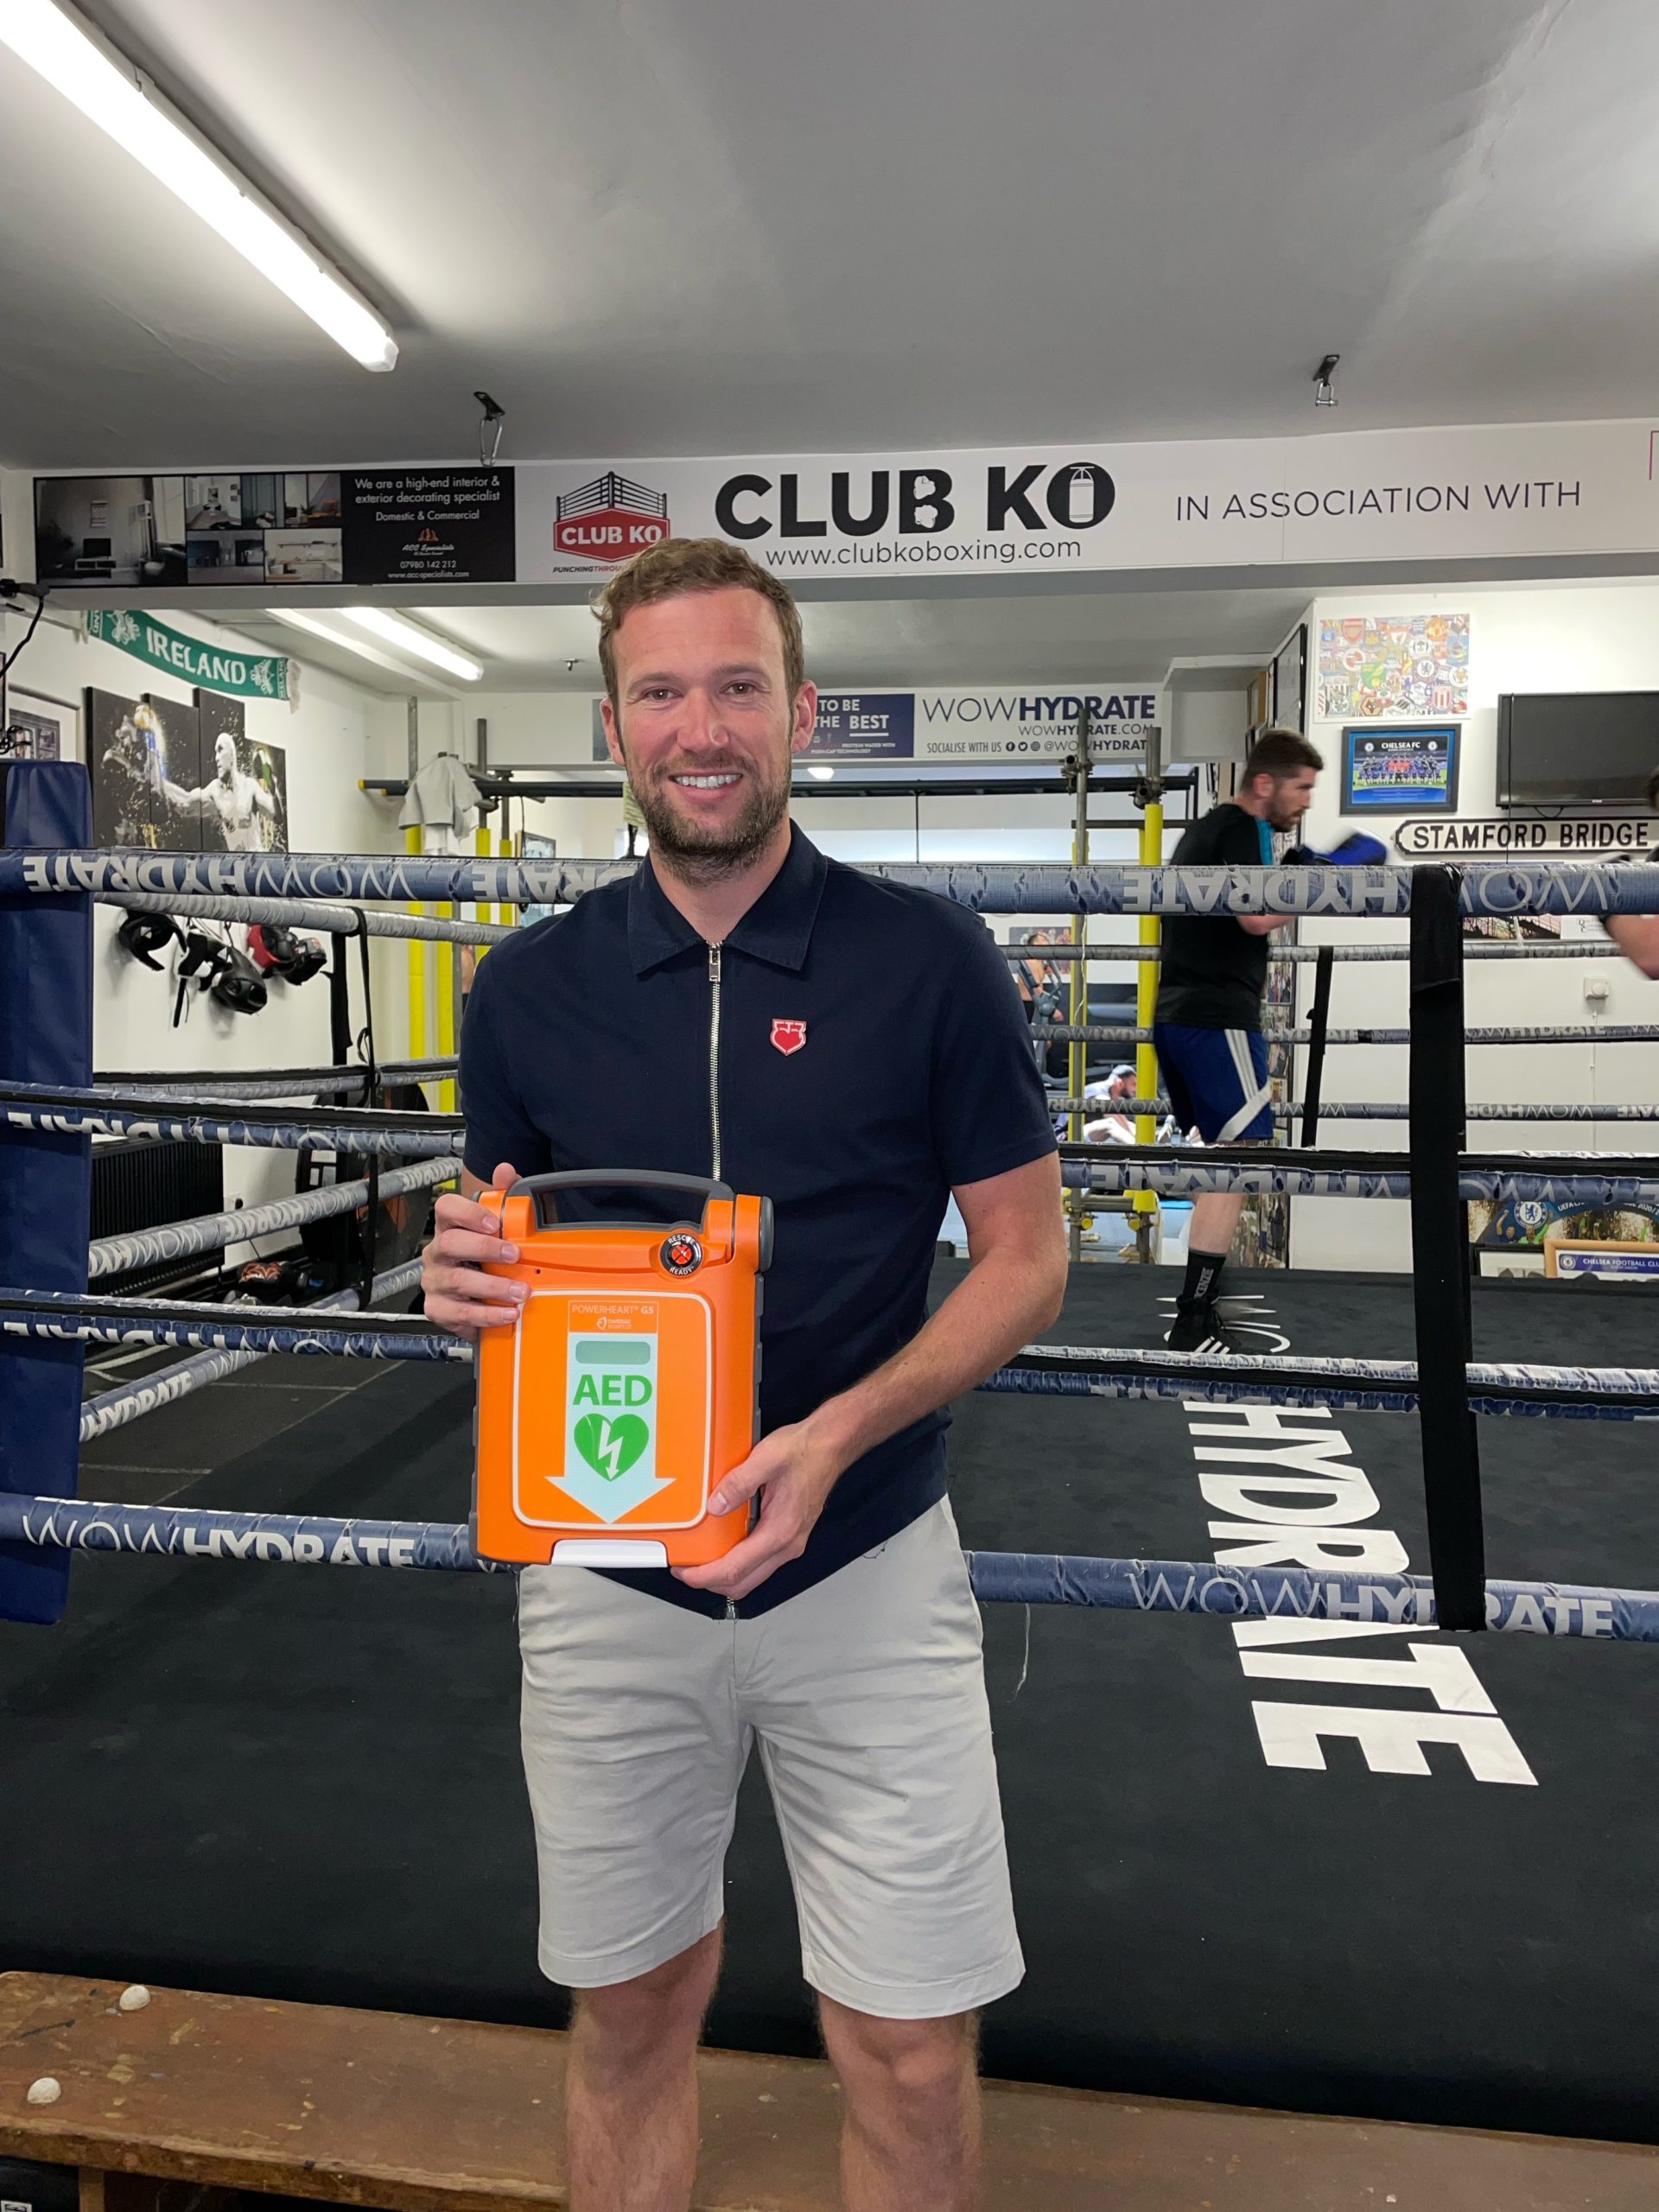 KO Boxing ABC is the latest JE3 defibrillator recipient